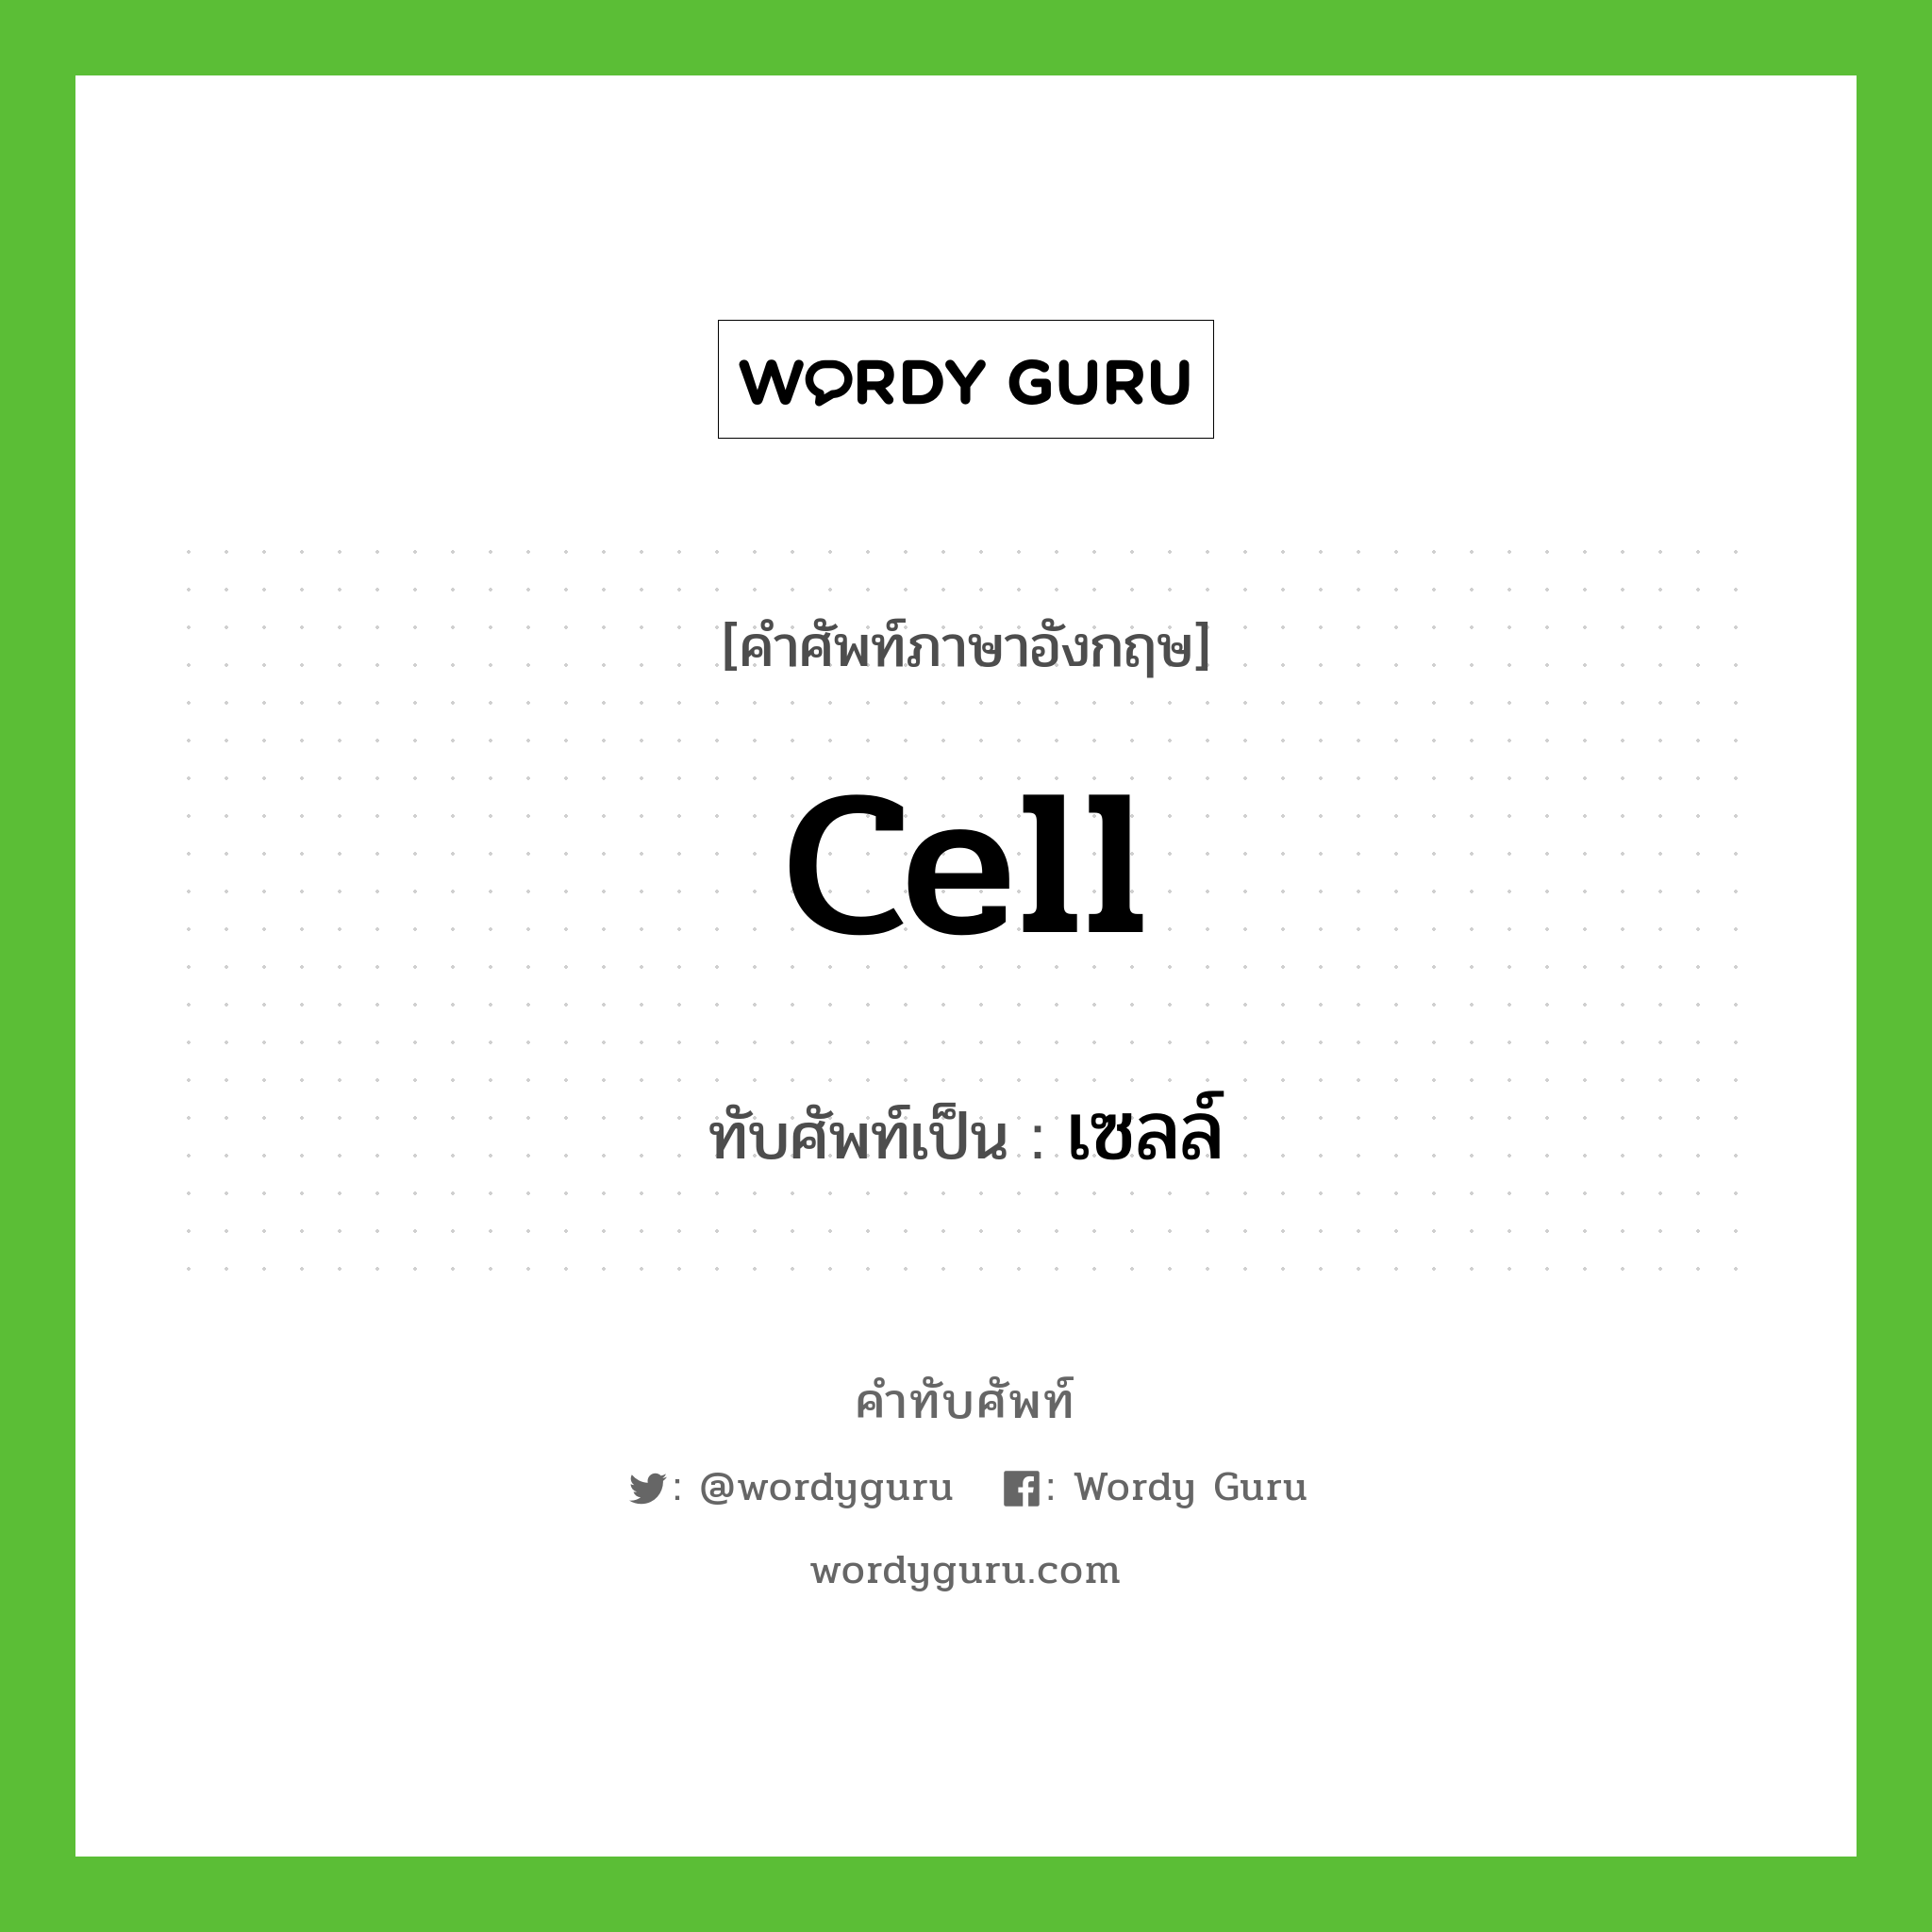 เซลล์ เขียนอย่างไร?, คำศัพท์ภาษาอังกฤษ เซลล์ ทับศัพท์เป็น cell